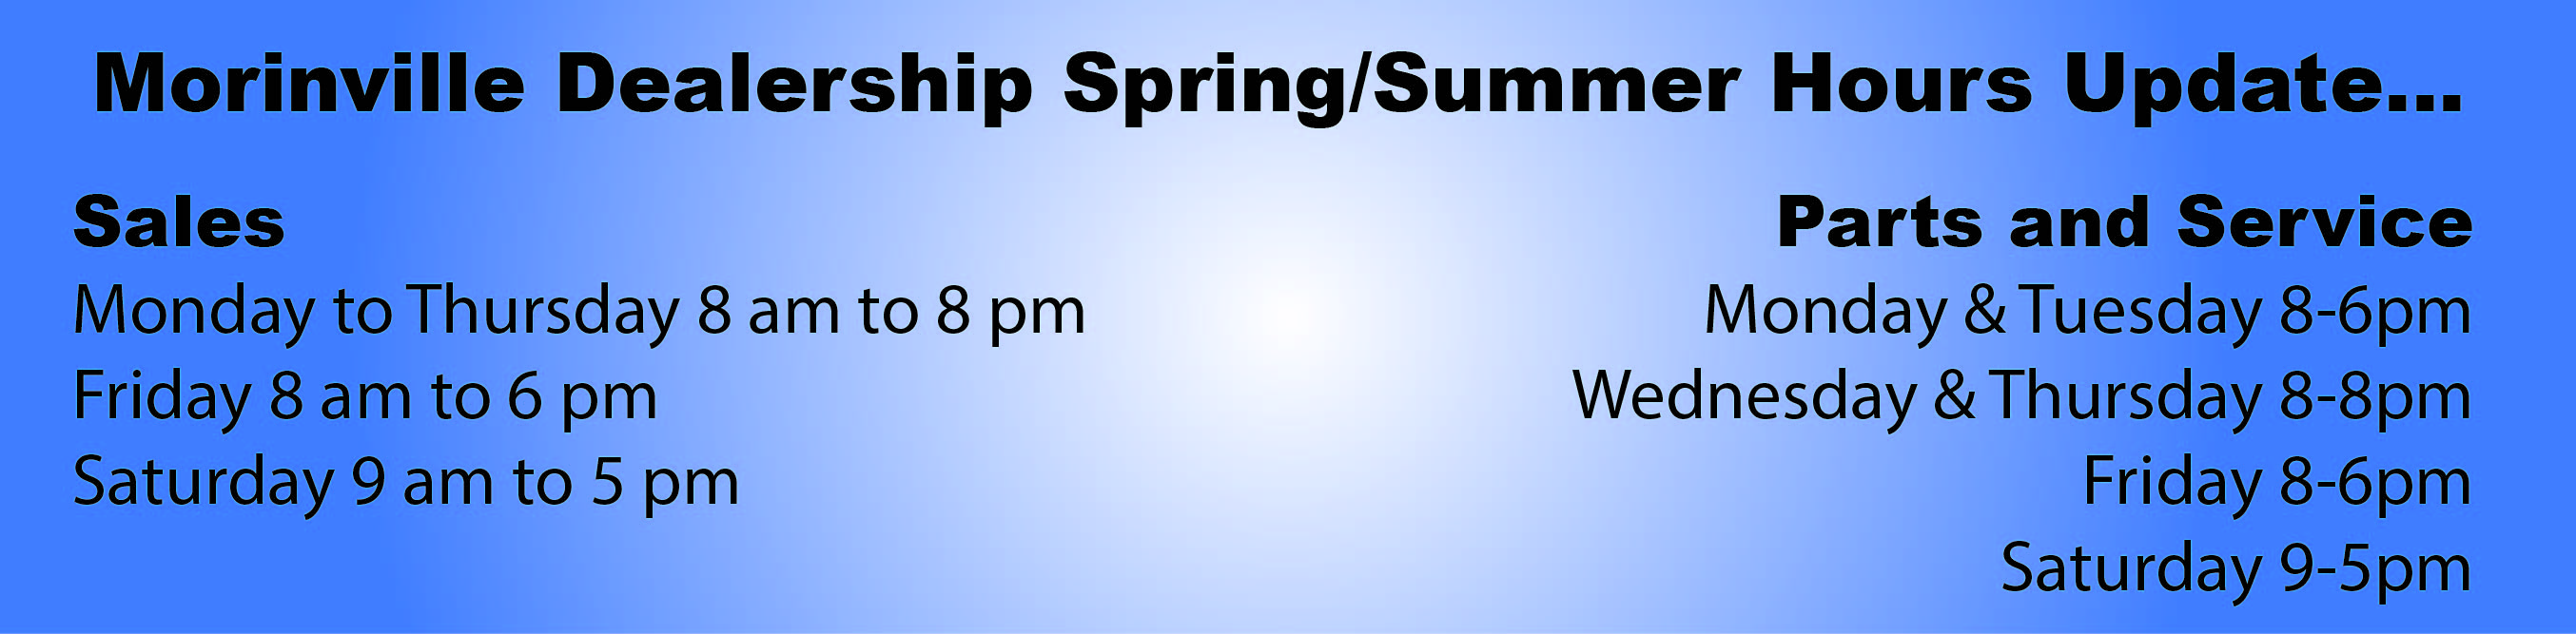 Morinville Dealership Spring/Summer Hours Update...